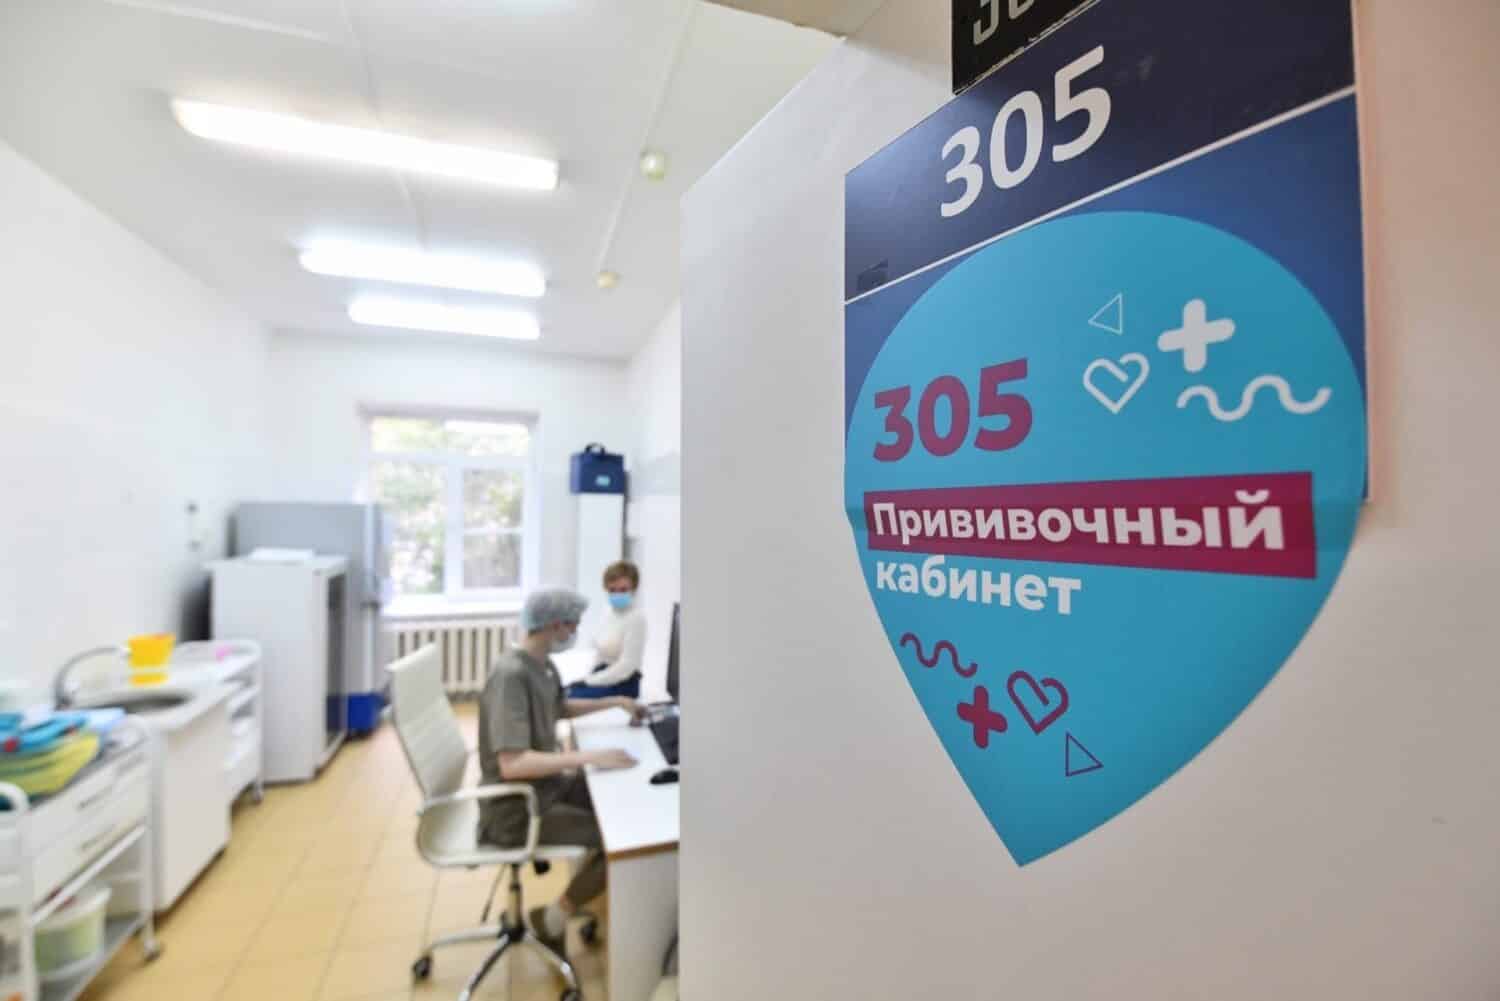 Москвичам, привитым от коронавируса, разблокируют социальные карты